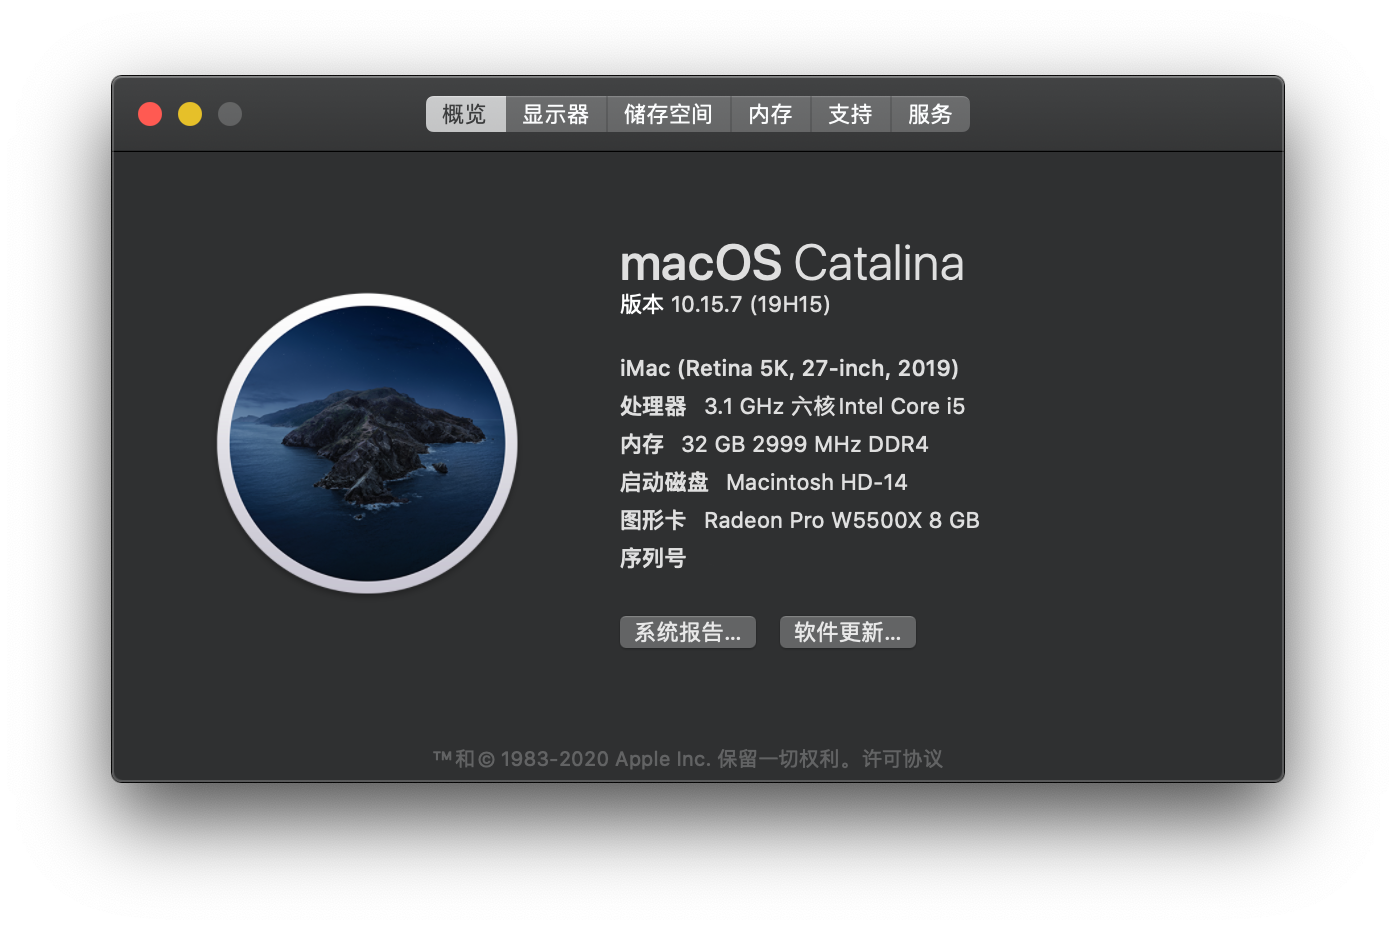 [macOS]macOS_Catalina_10.15.7_19H15_Shilin_Studio.rar可引导可虚拟机安装镜像包（已修复引导并优化）